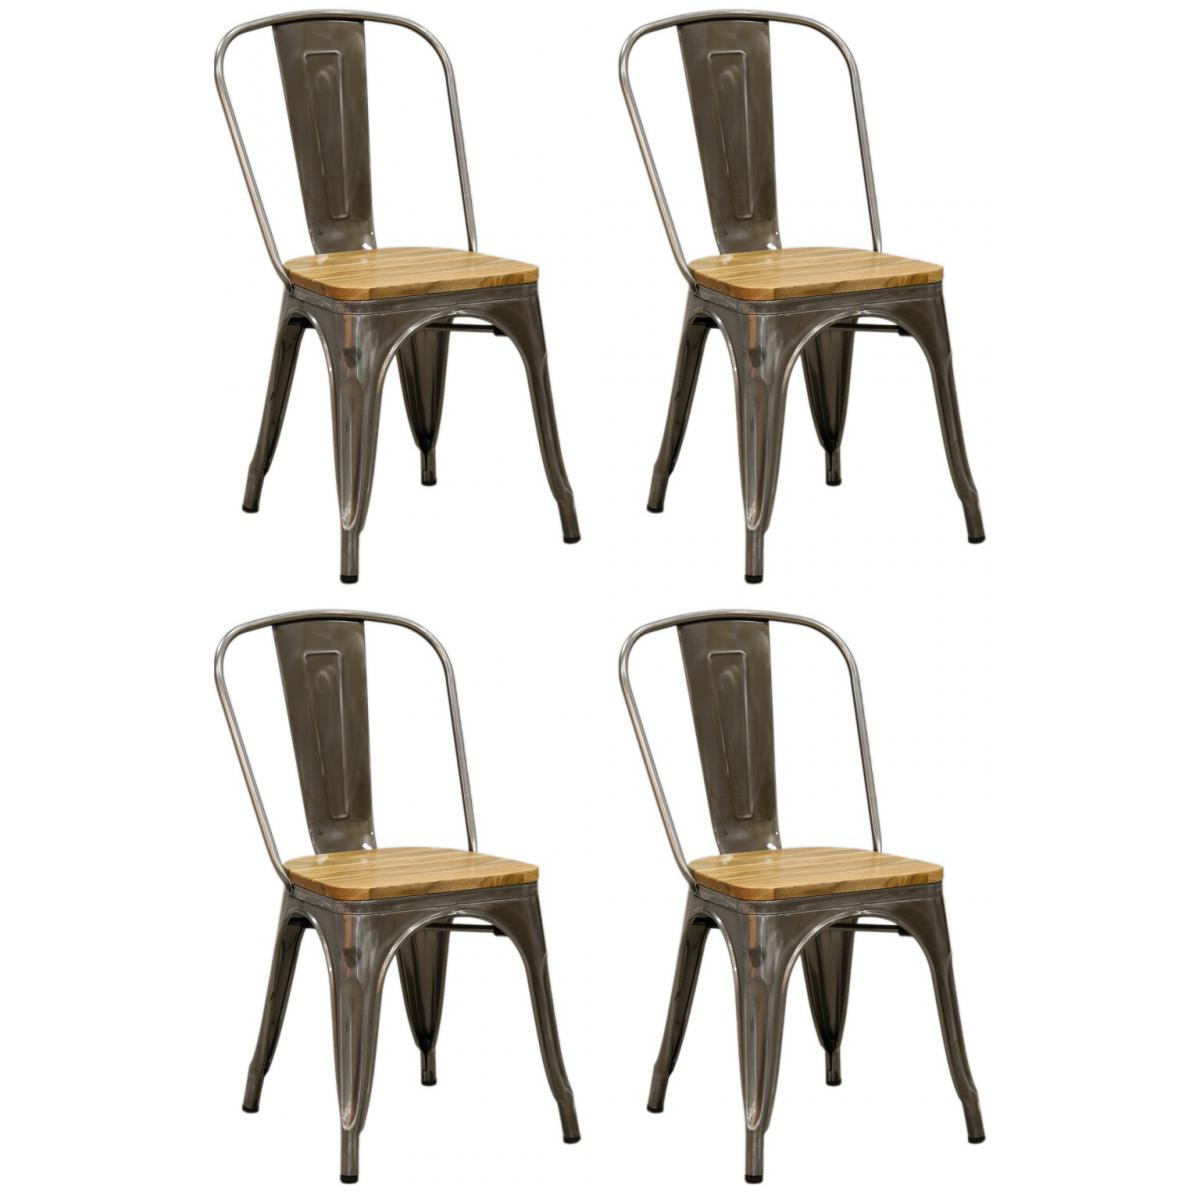 Aubry Gaspard - Chaise industrielle en métal et bois d'orme huilé - Chaises